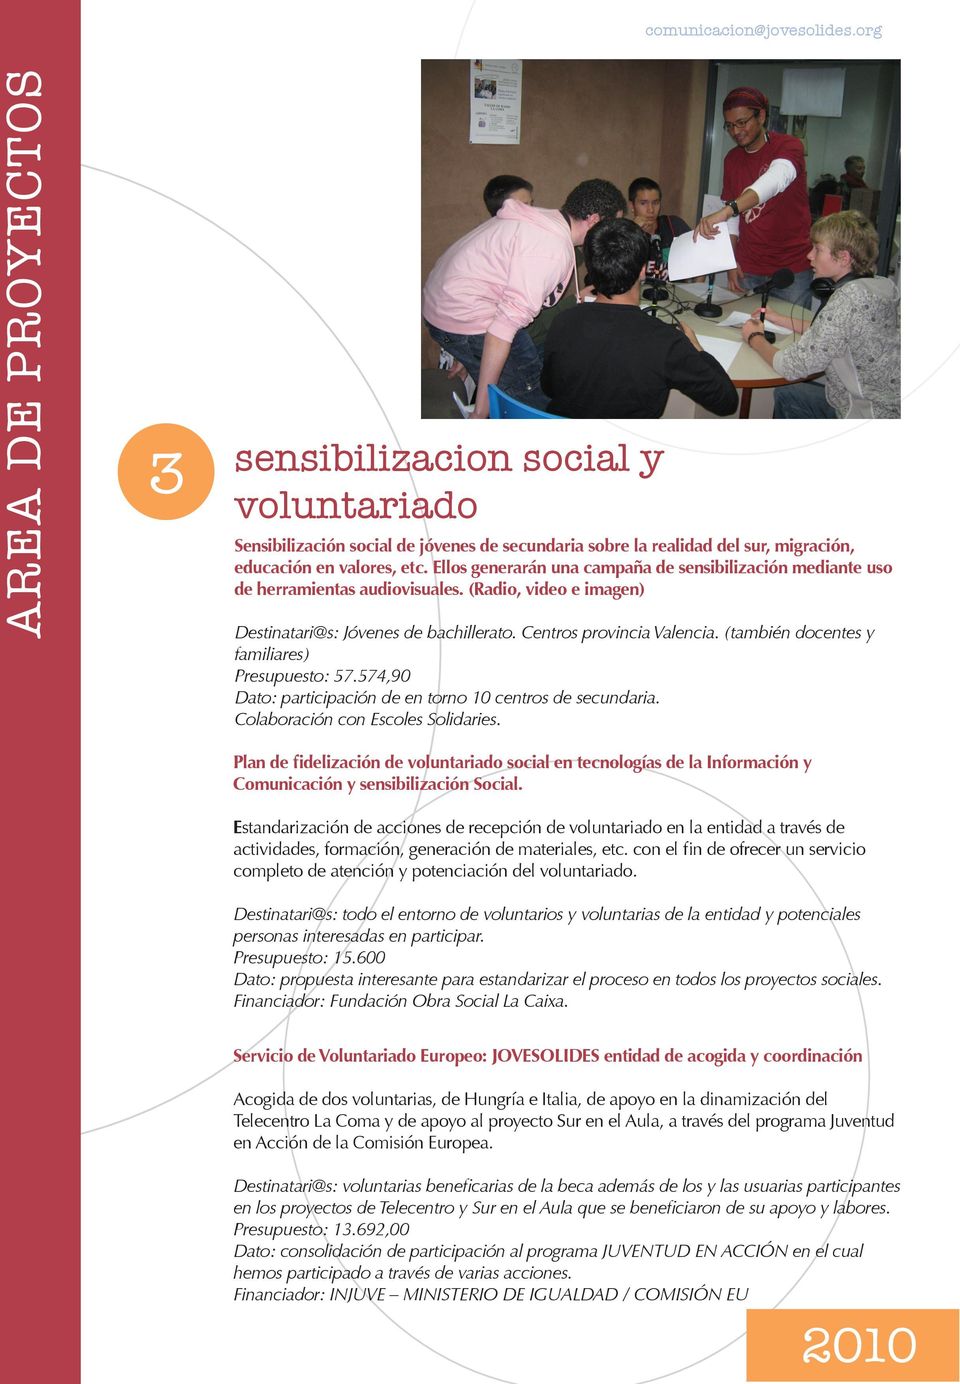 (también docentes y familiares) Presupuesto: 57.574,90 Dato: participación de en torno 10 centros de secundaria. Colaboración con Escoles Solidaries.